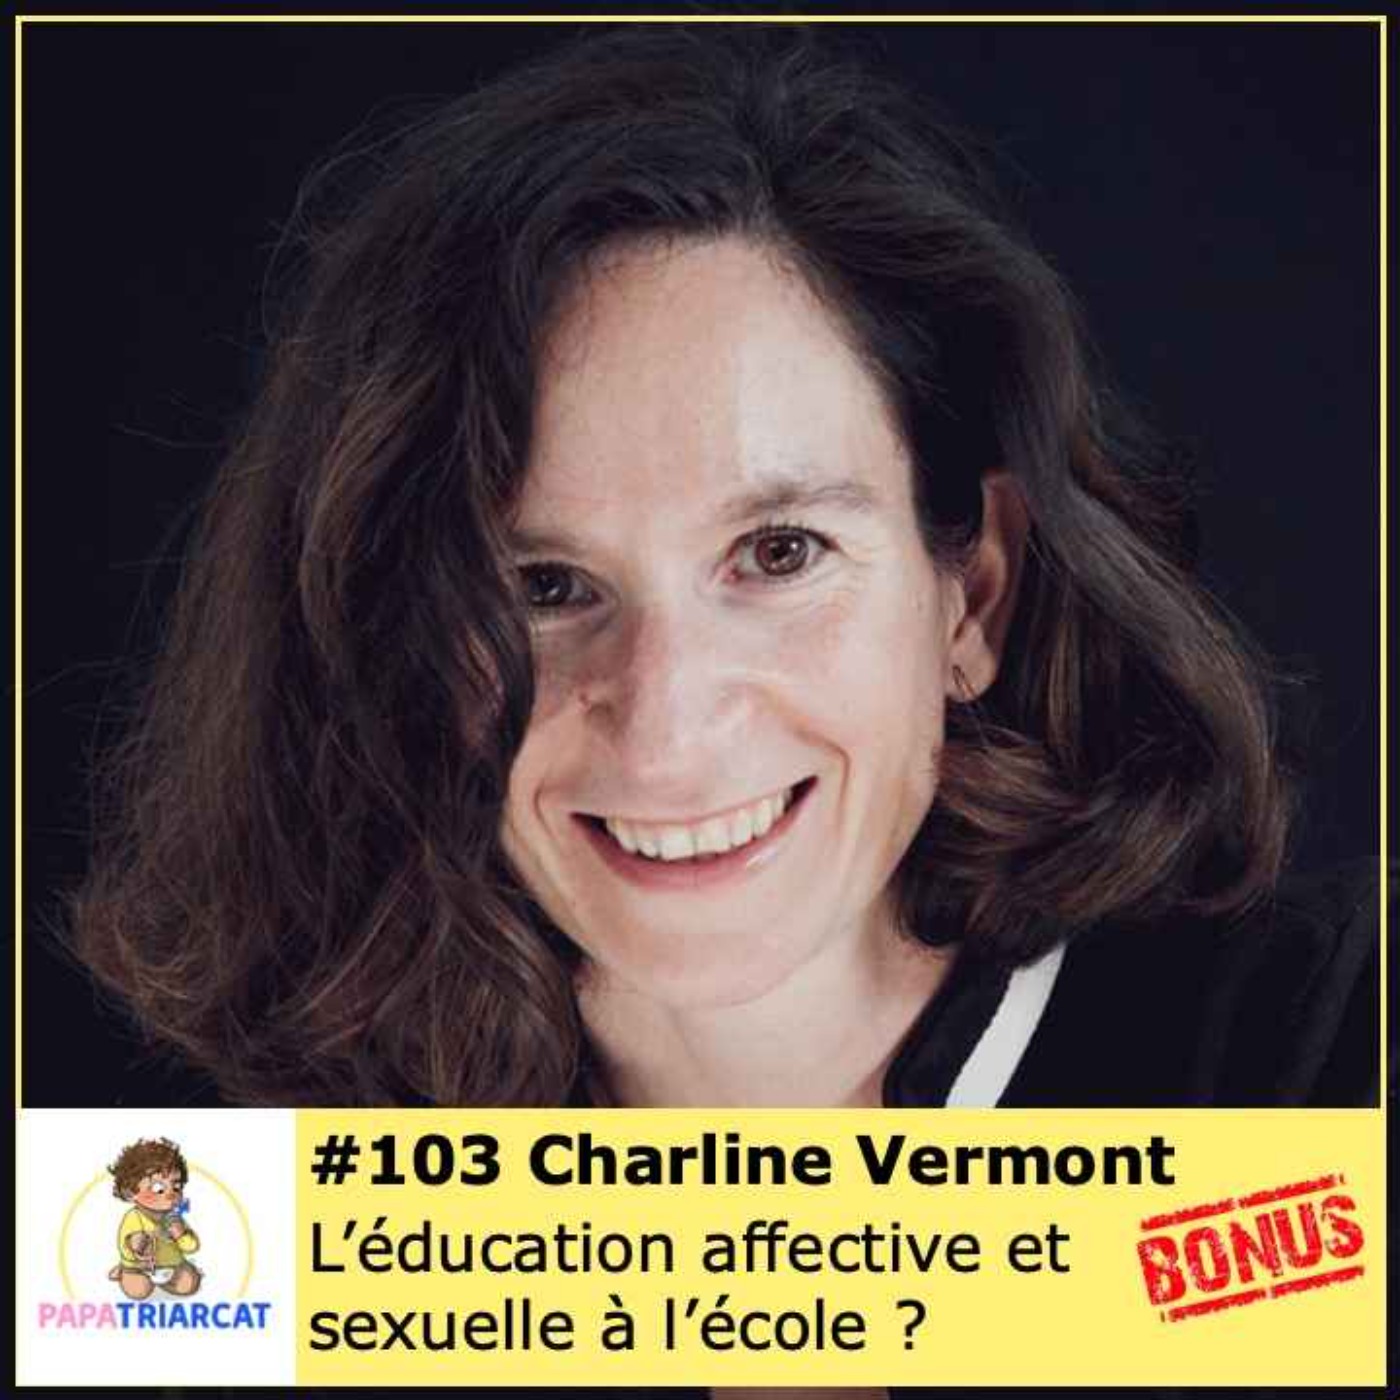 DECOUVERTE BONUS #103 - L'éducation affective et sexuelle à l'école ? - Charline Vermont